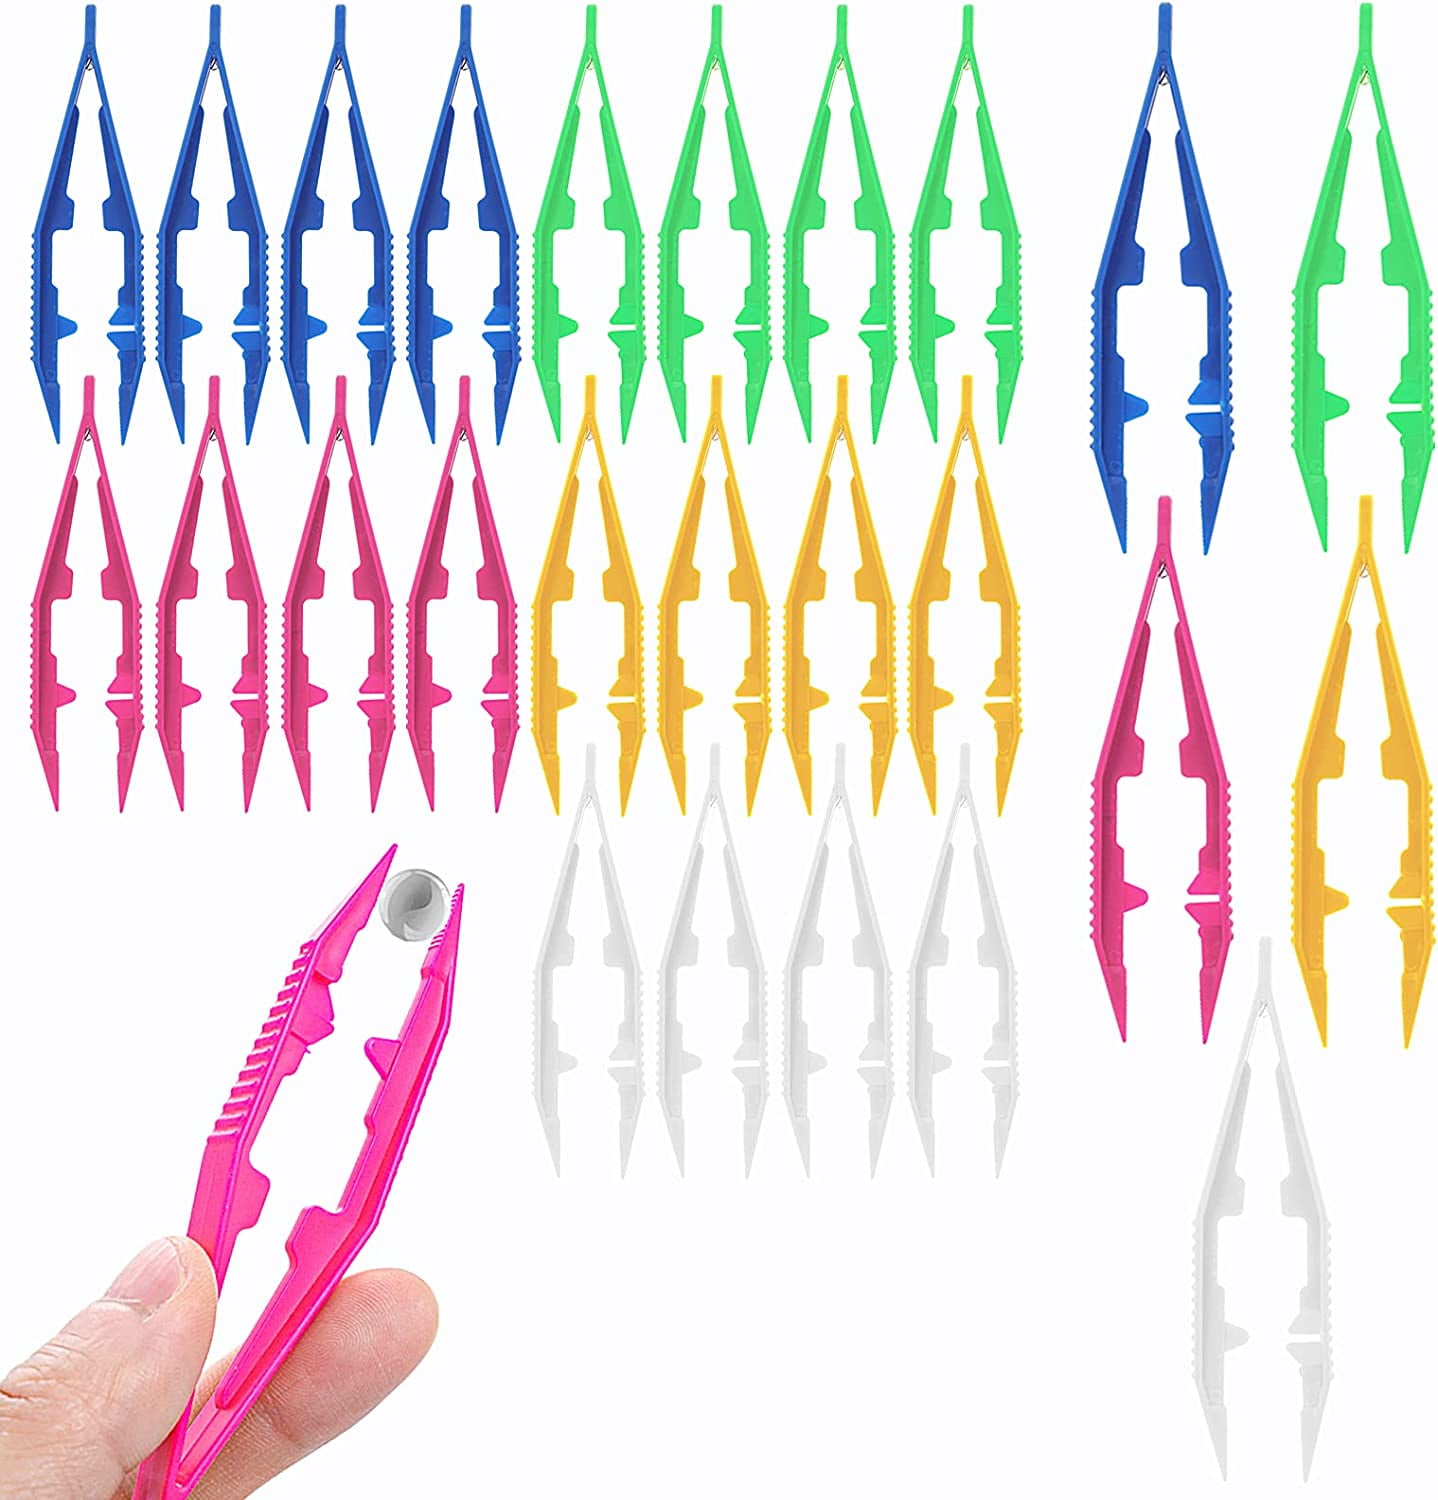 4 Inch Plastic Tweezers - Pack of 25, Plastic Beads Tweezers First